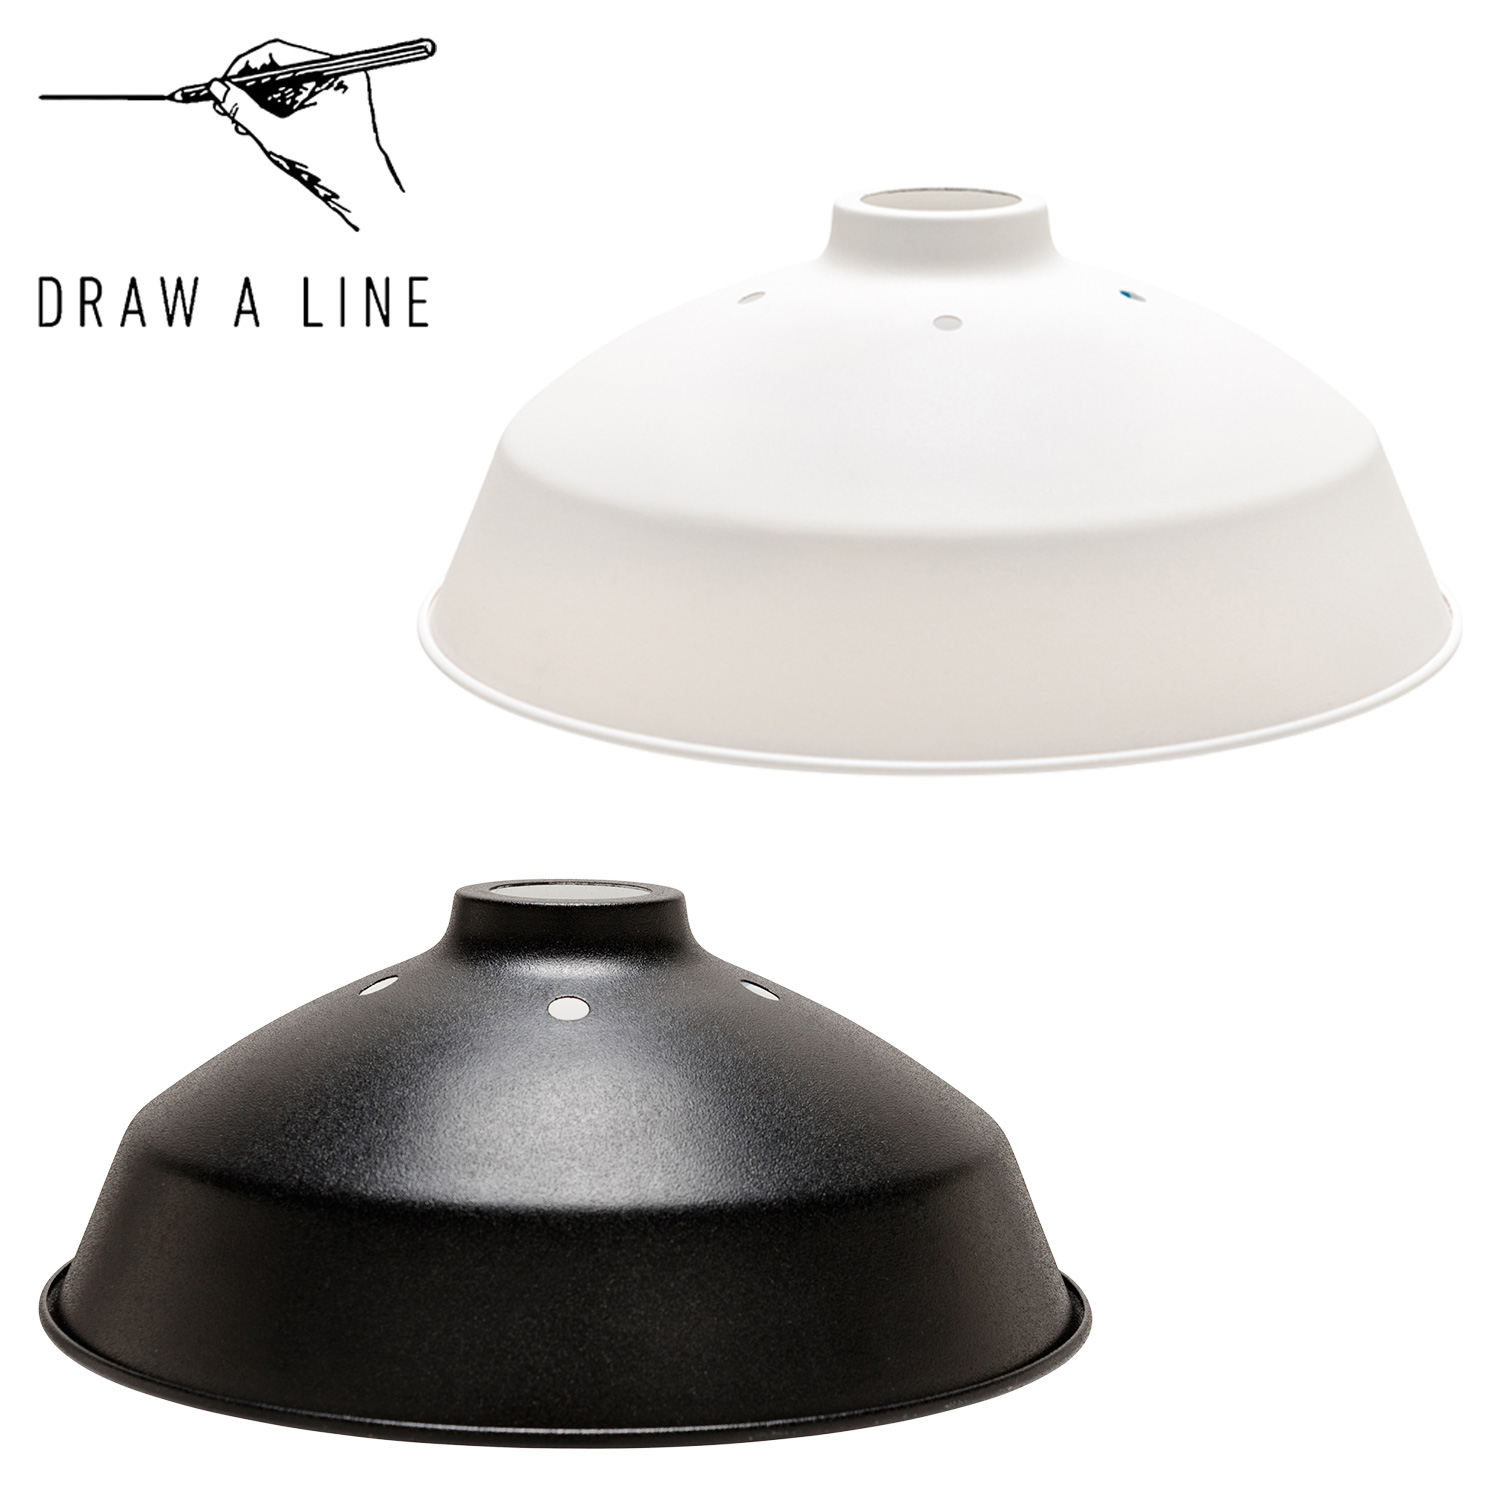  ドローアライン DRAW A LINE ランプ 関節照明 ライト シェードのみ つっぱり棒 照明器具 203 Shade 縦取付専用 LED対応 アンティーク D-BS